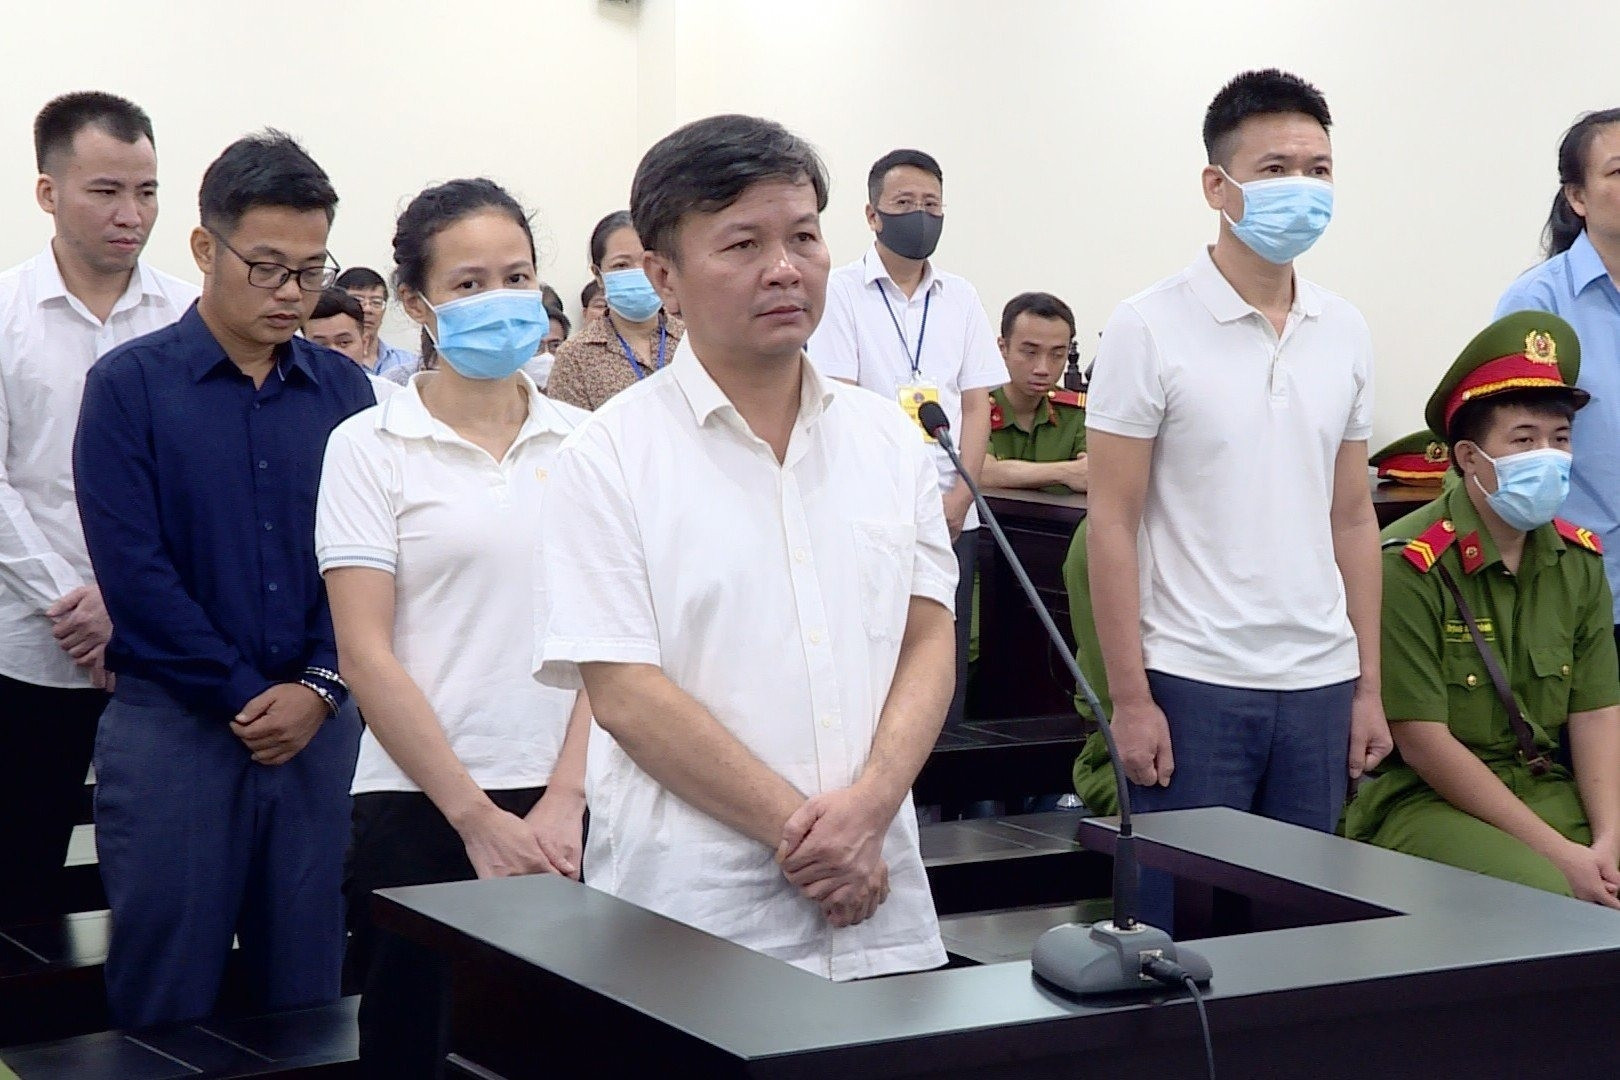 Cựu chủ tịch Công ty Cây xanh khai bị ông Nguyễn Đức Chung mắng, dọa đuổi việc